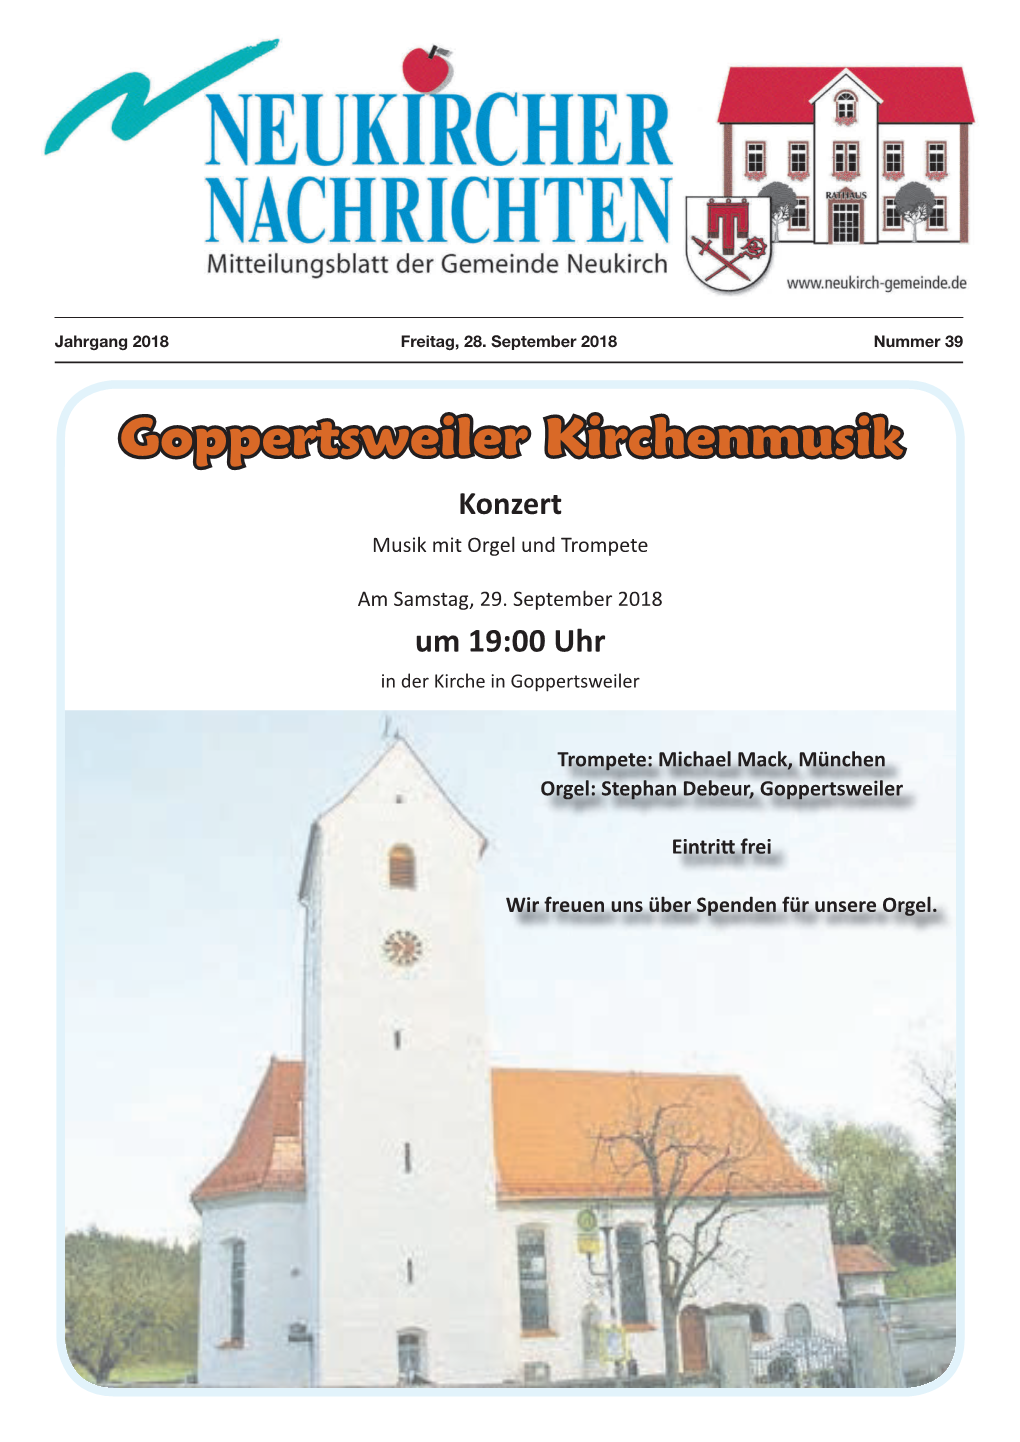 Goppertsweiler Kirchenmusik